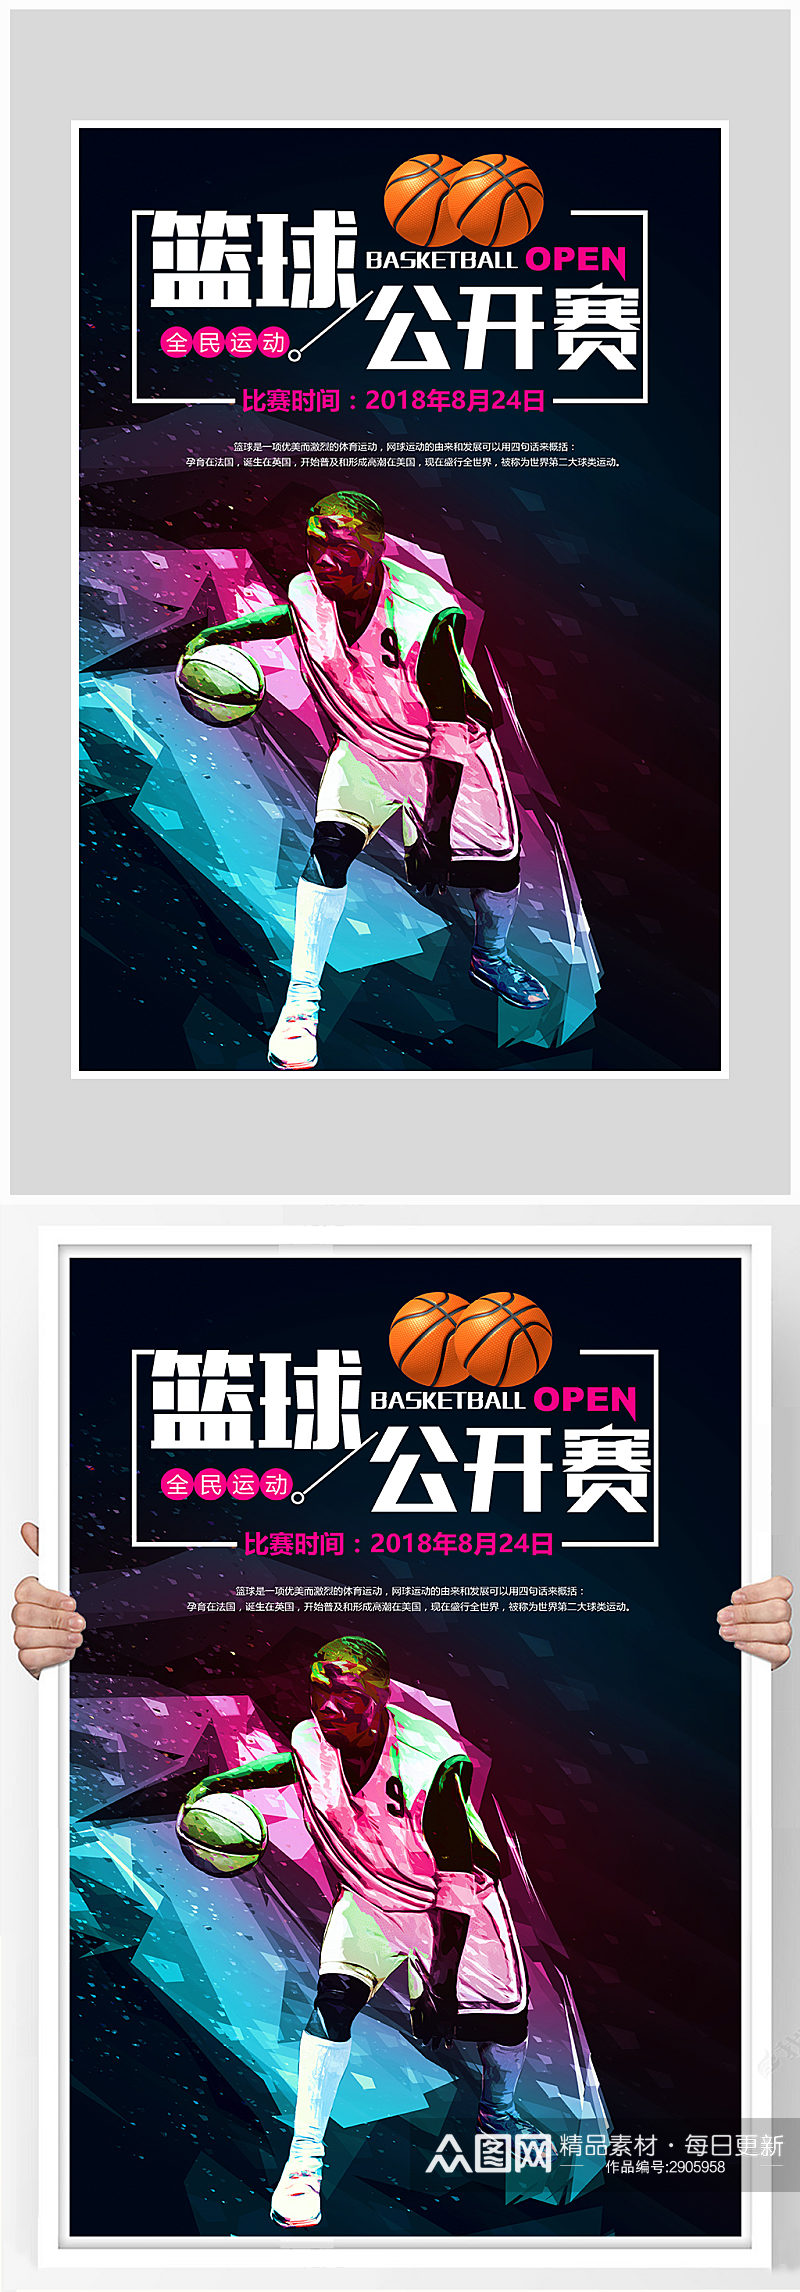 创意炫酷篮球公开赛海报设计素材